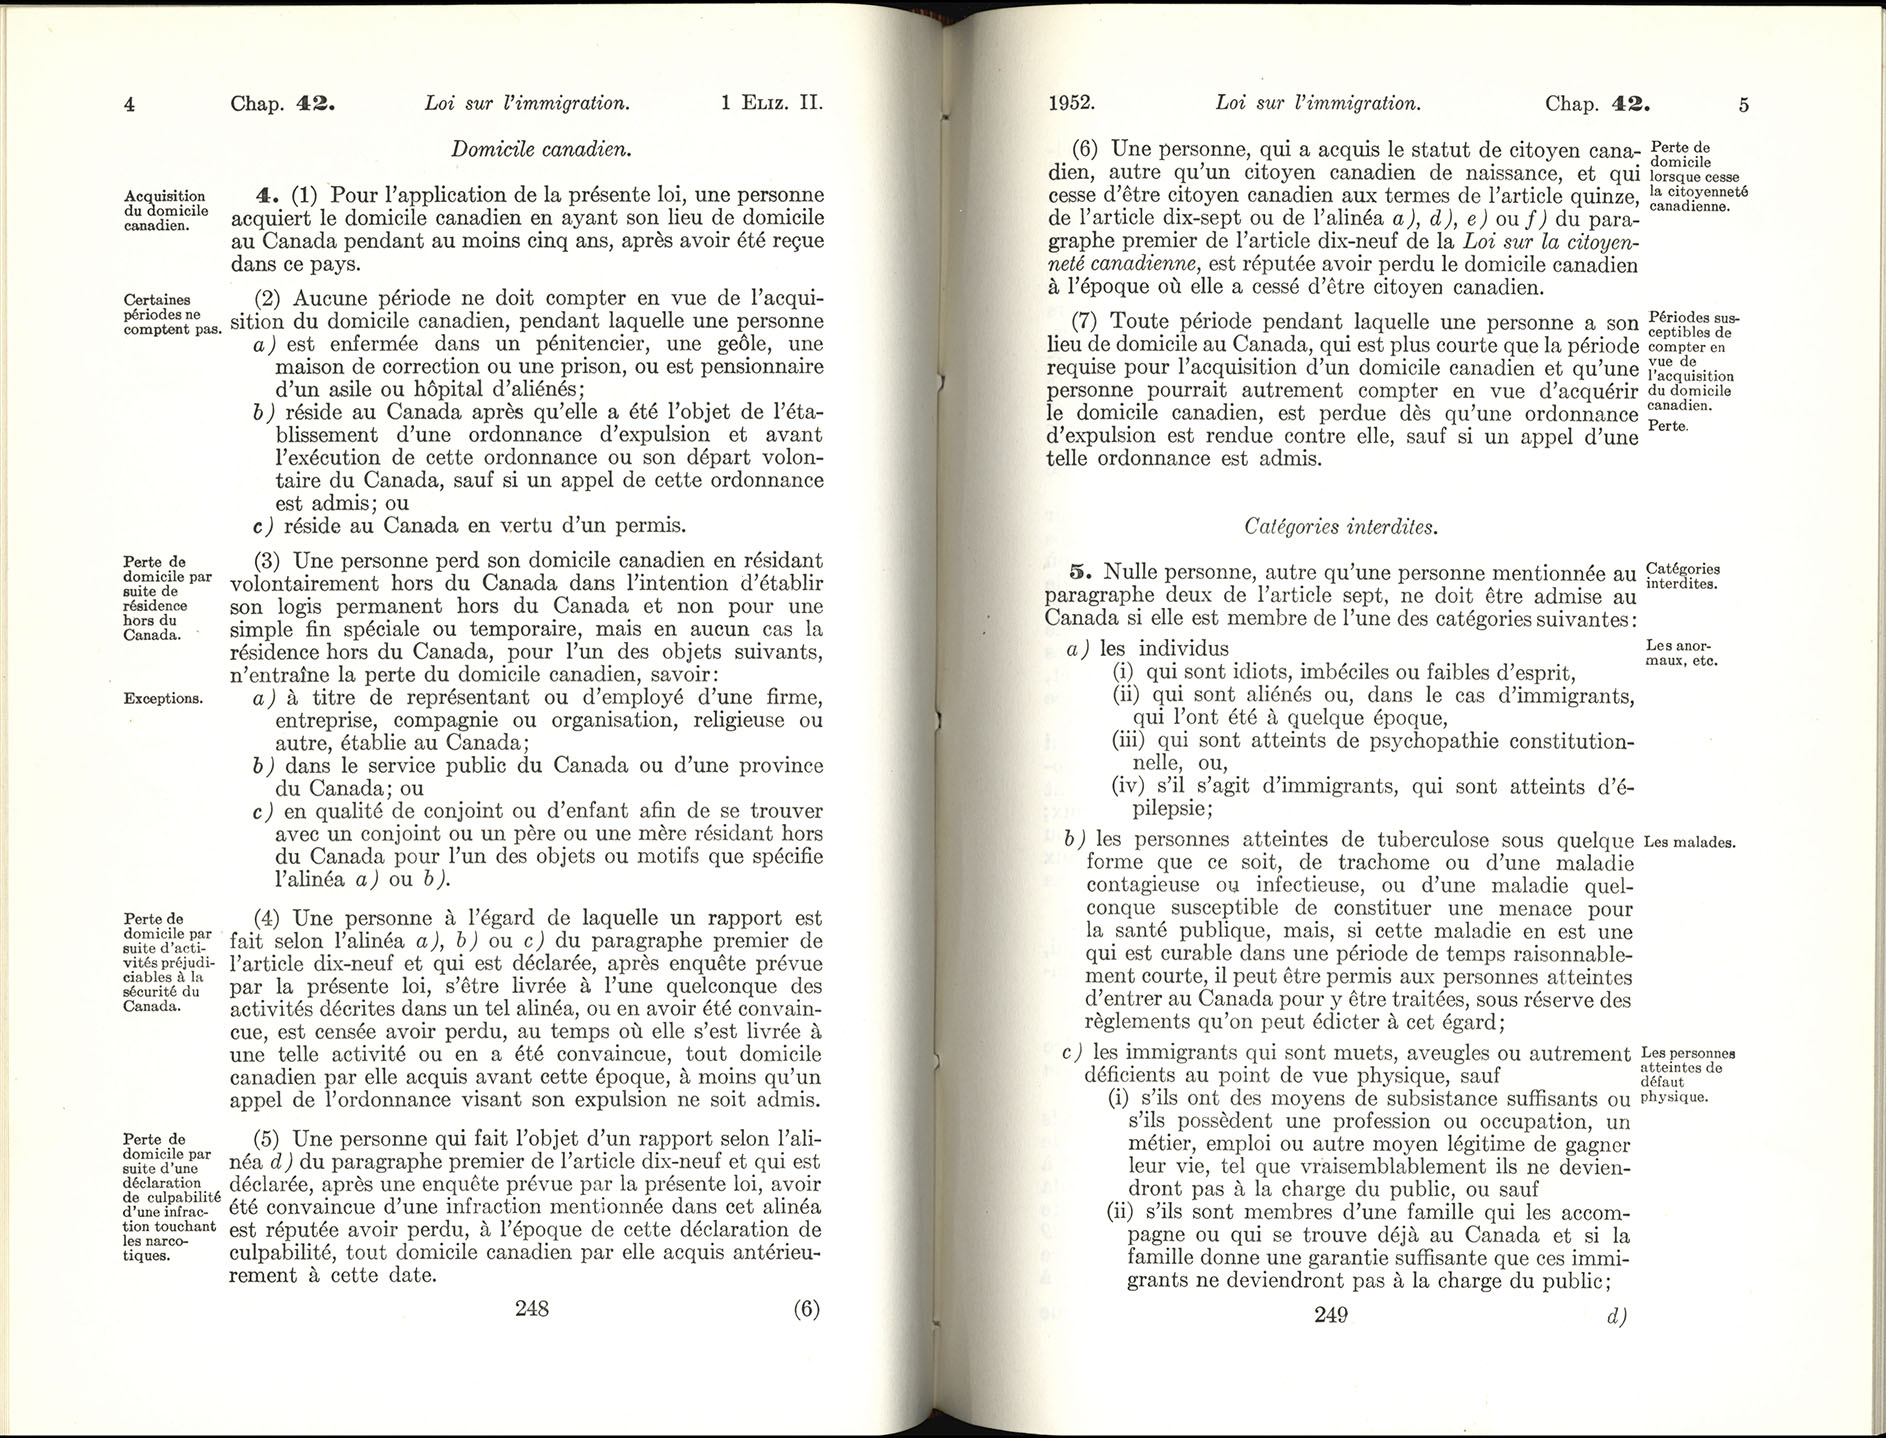 Chap 42 Page 248, 249 Loi sur l’immigration, 1952